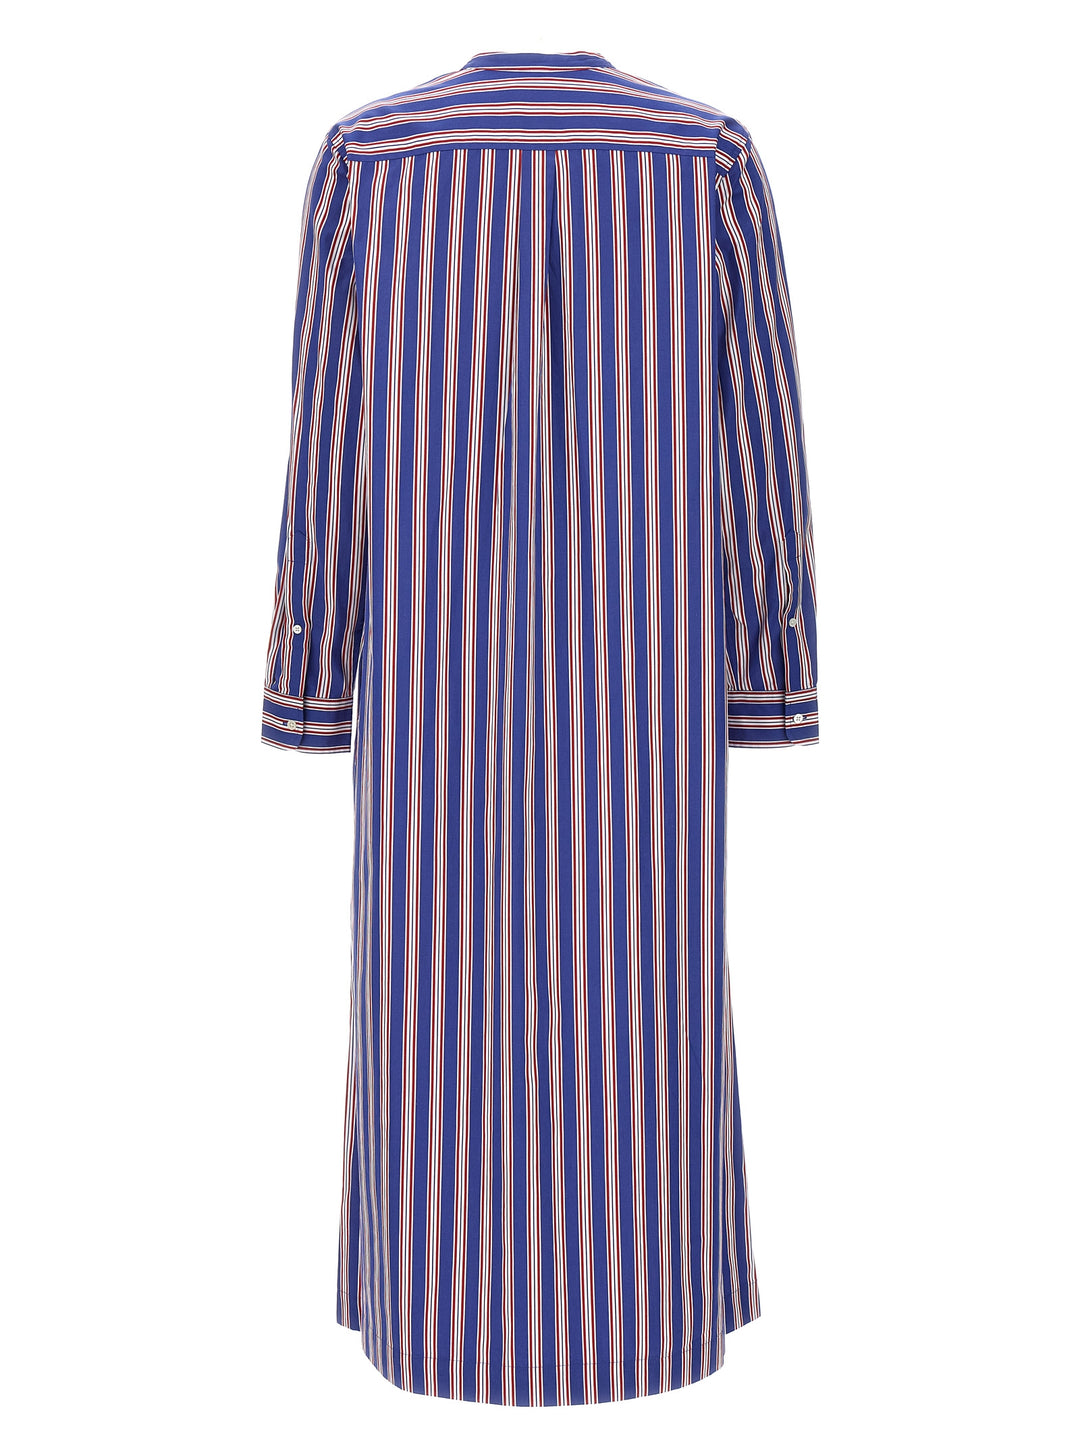 Striped Dress Abiti Multicolor